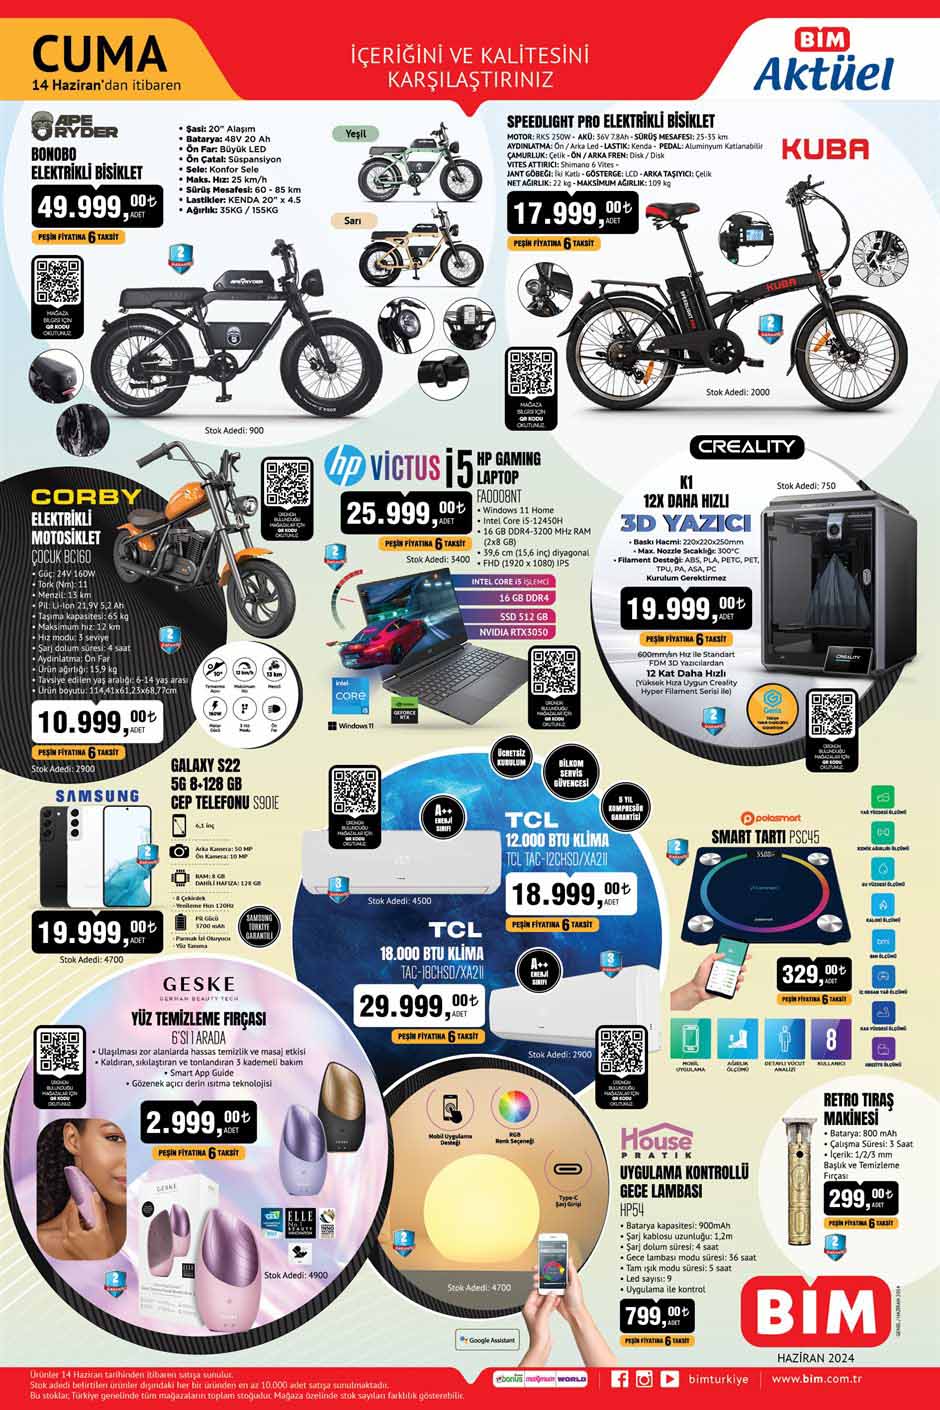 Bim 14 Haziran'da elektrikli bisiklet, gaming laptop ve 3D yazıcı satıyor